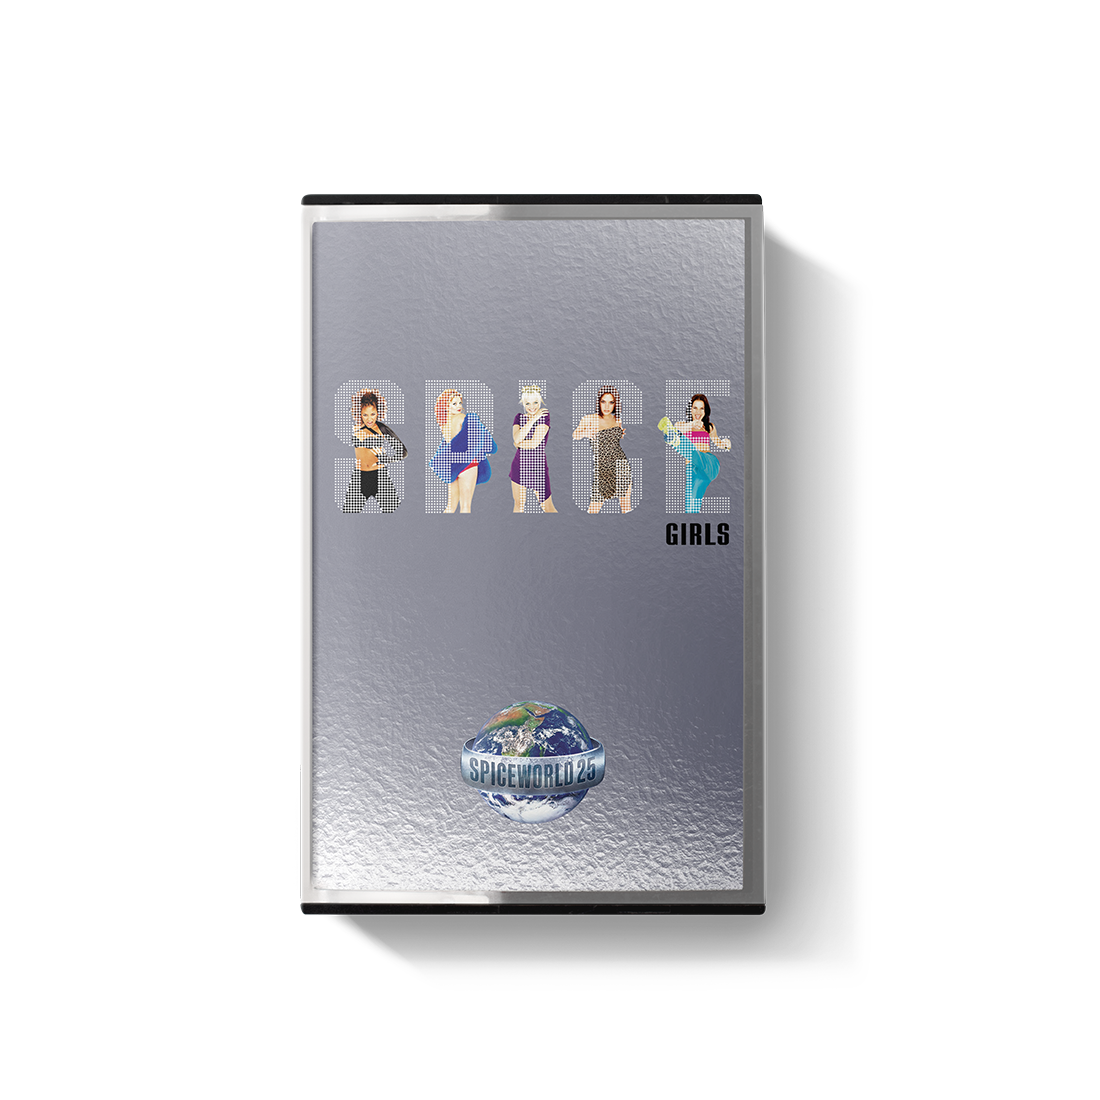 Spice Girls - Spiceworld 25: Double Cassette